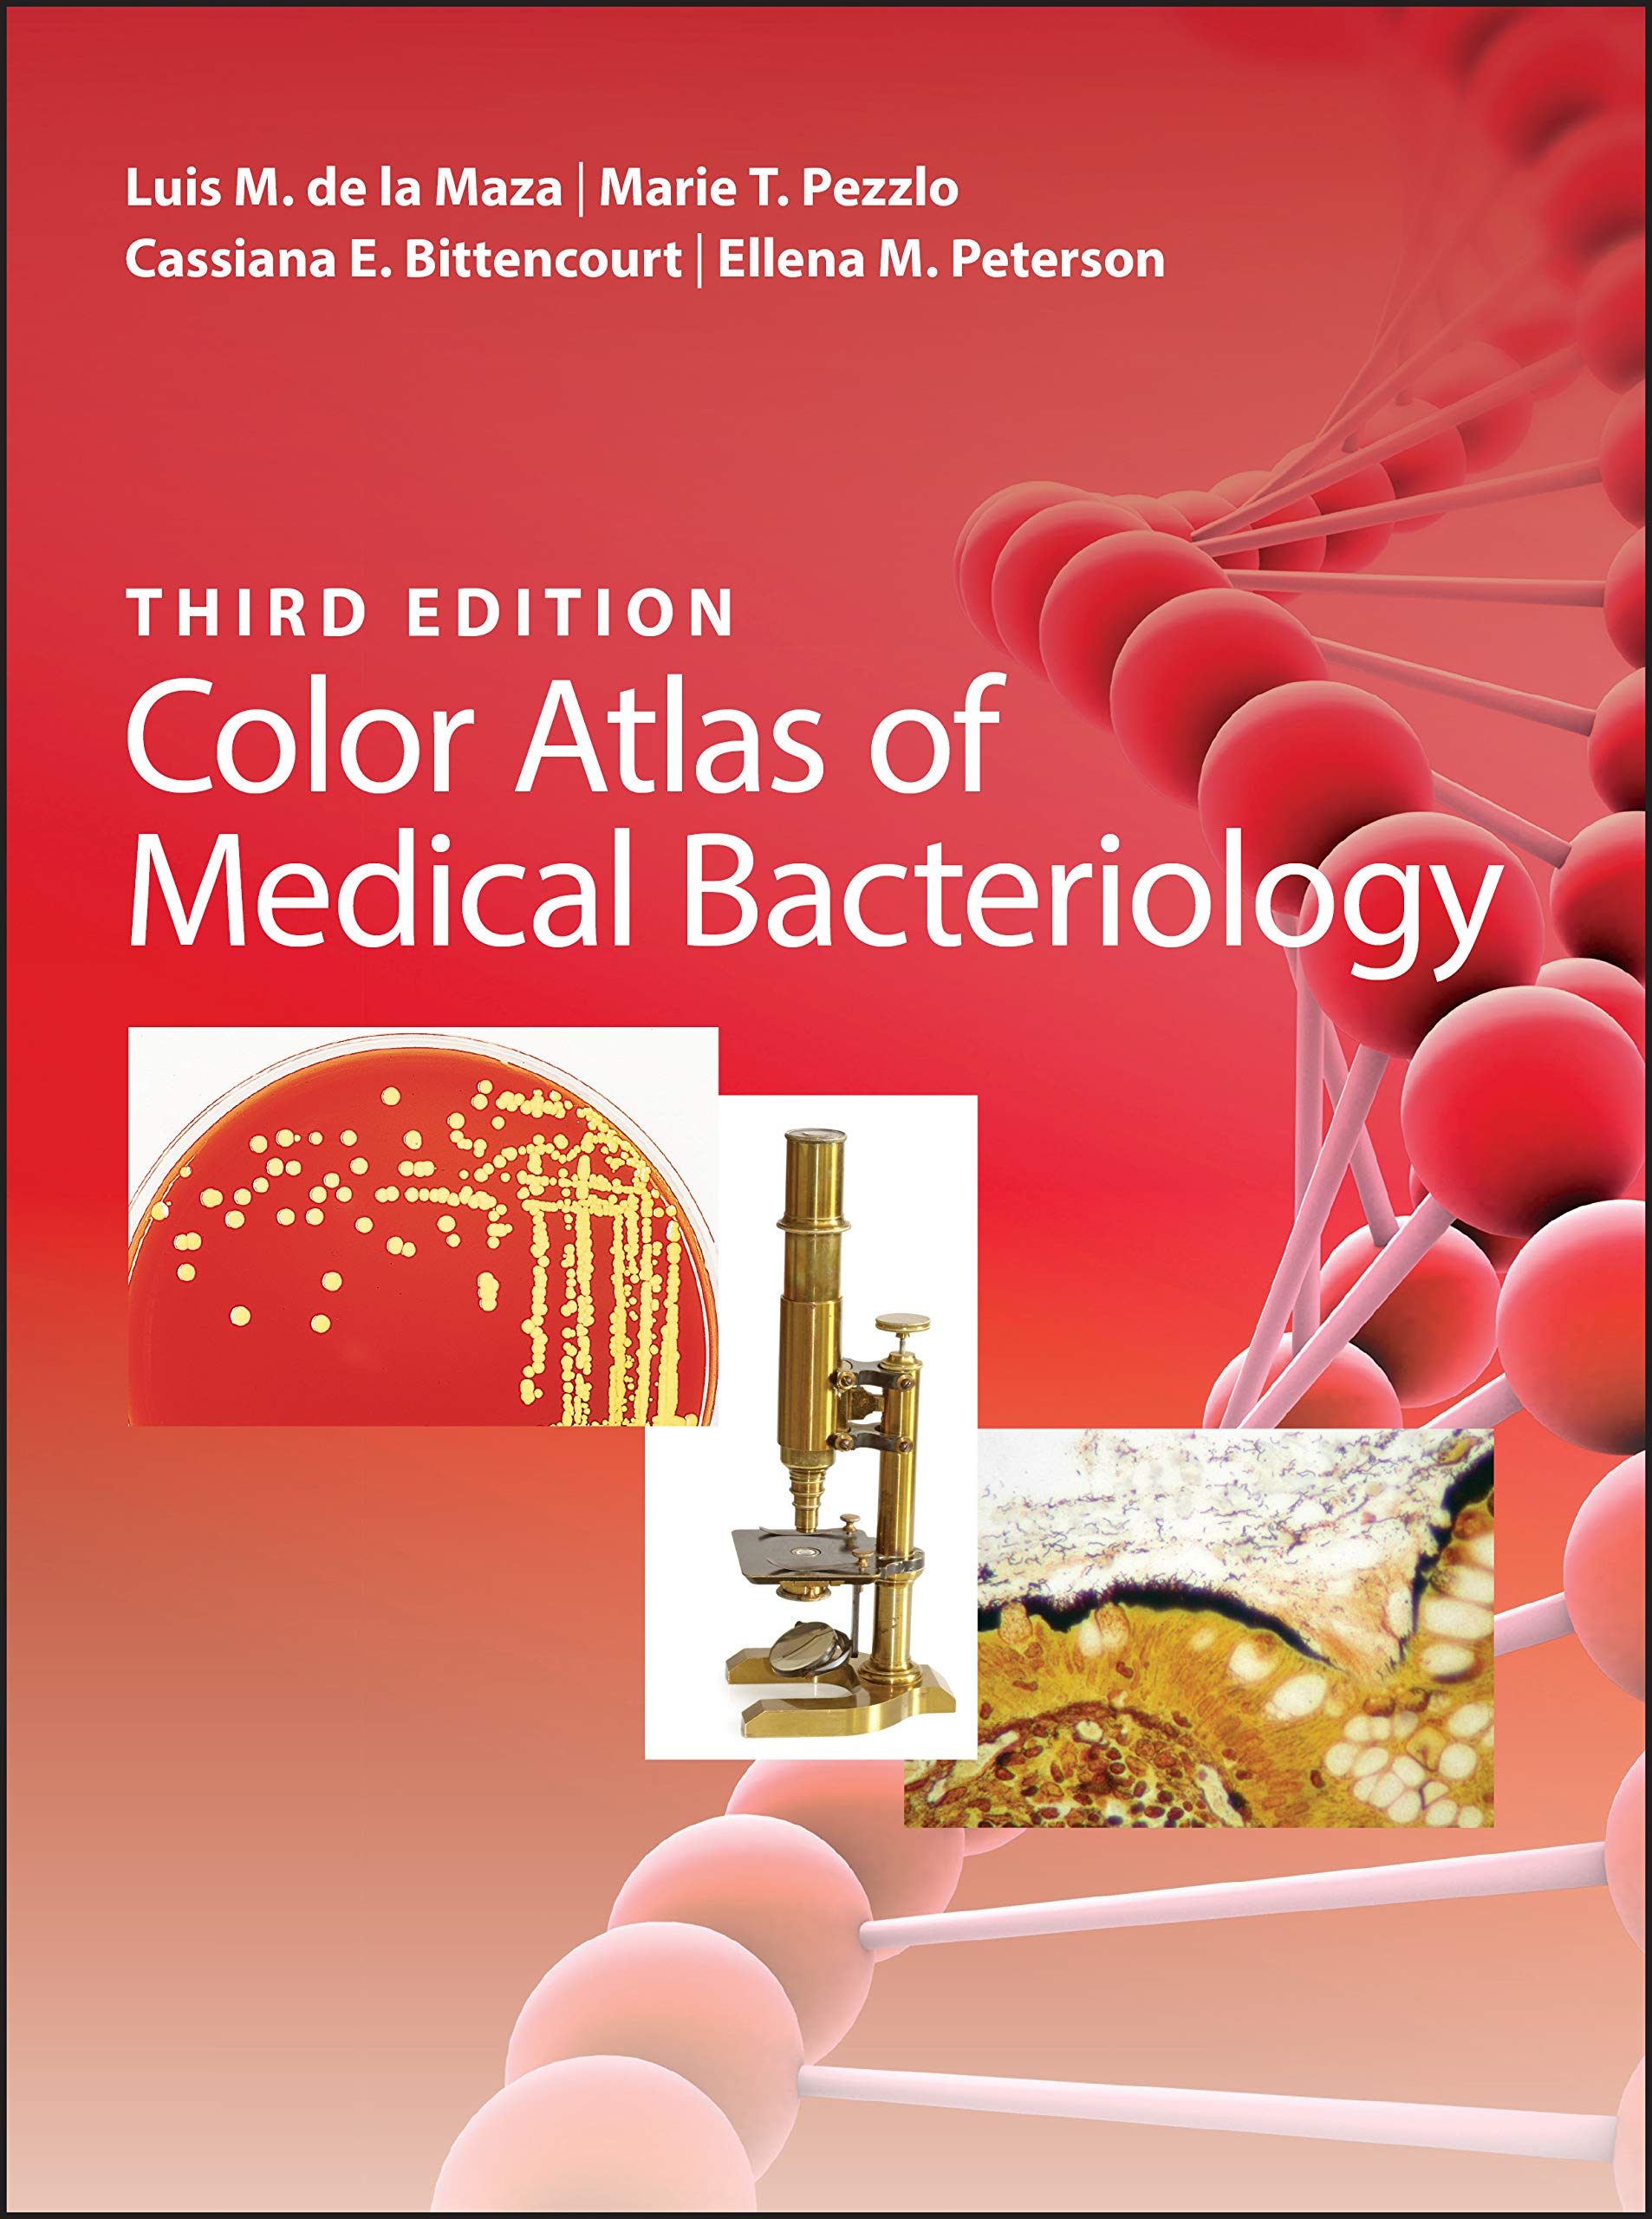 Color Atlas of Medical Bacteriology | Luis M. de la Maza, Marie T. Pezzlo, Cassiana E. Bittencourt, Ellena M. Peterson